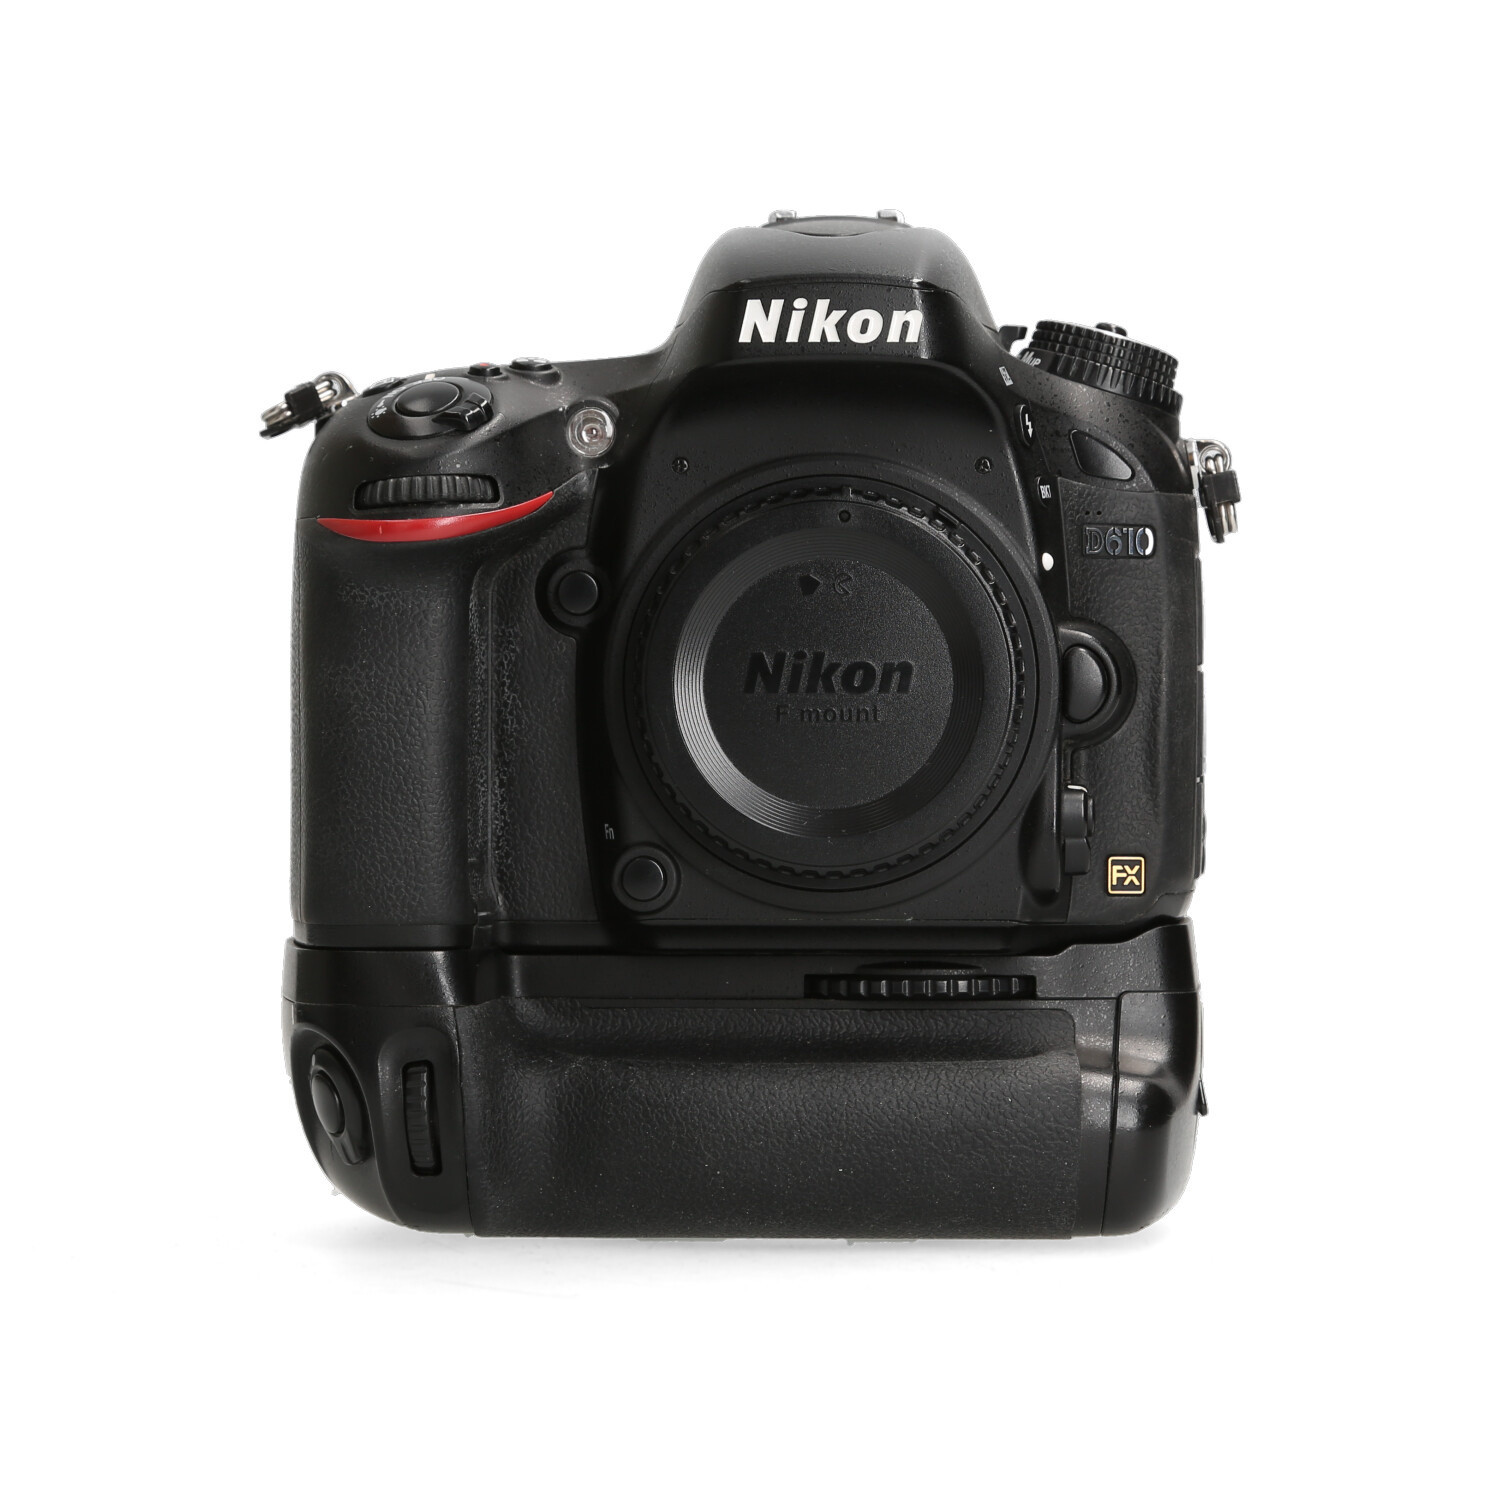 Nikon Nikon D610 - 61.805 kliks + Jupio grip